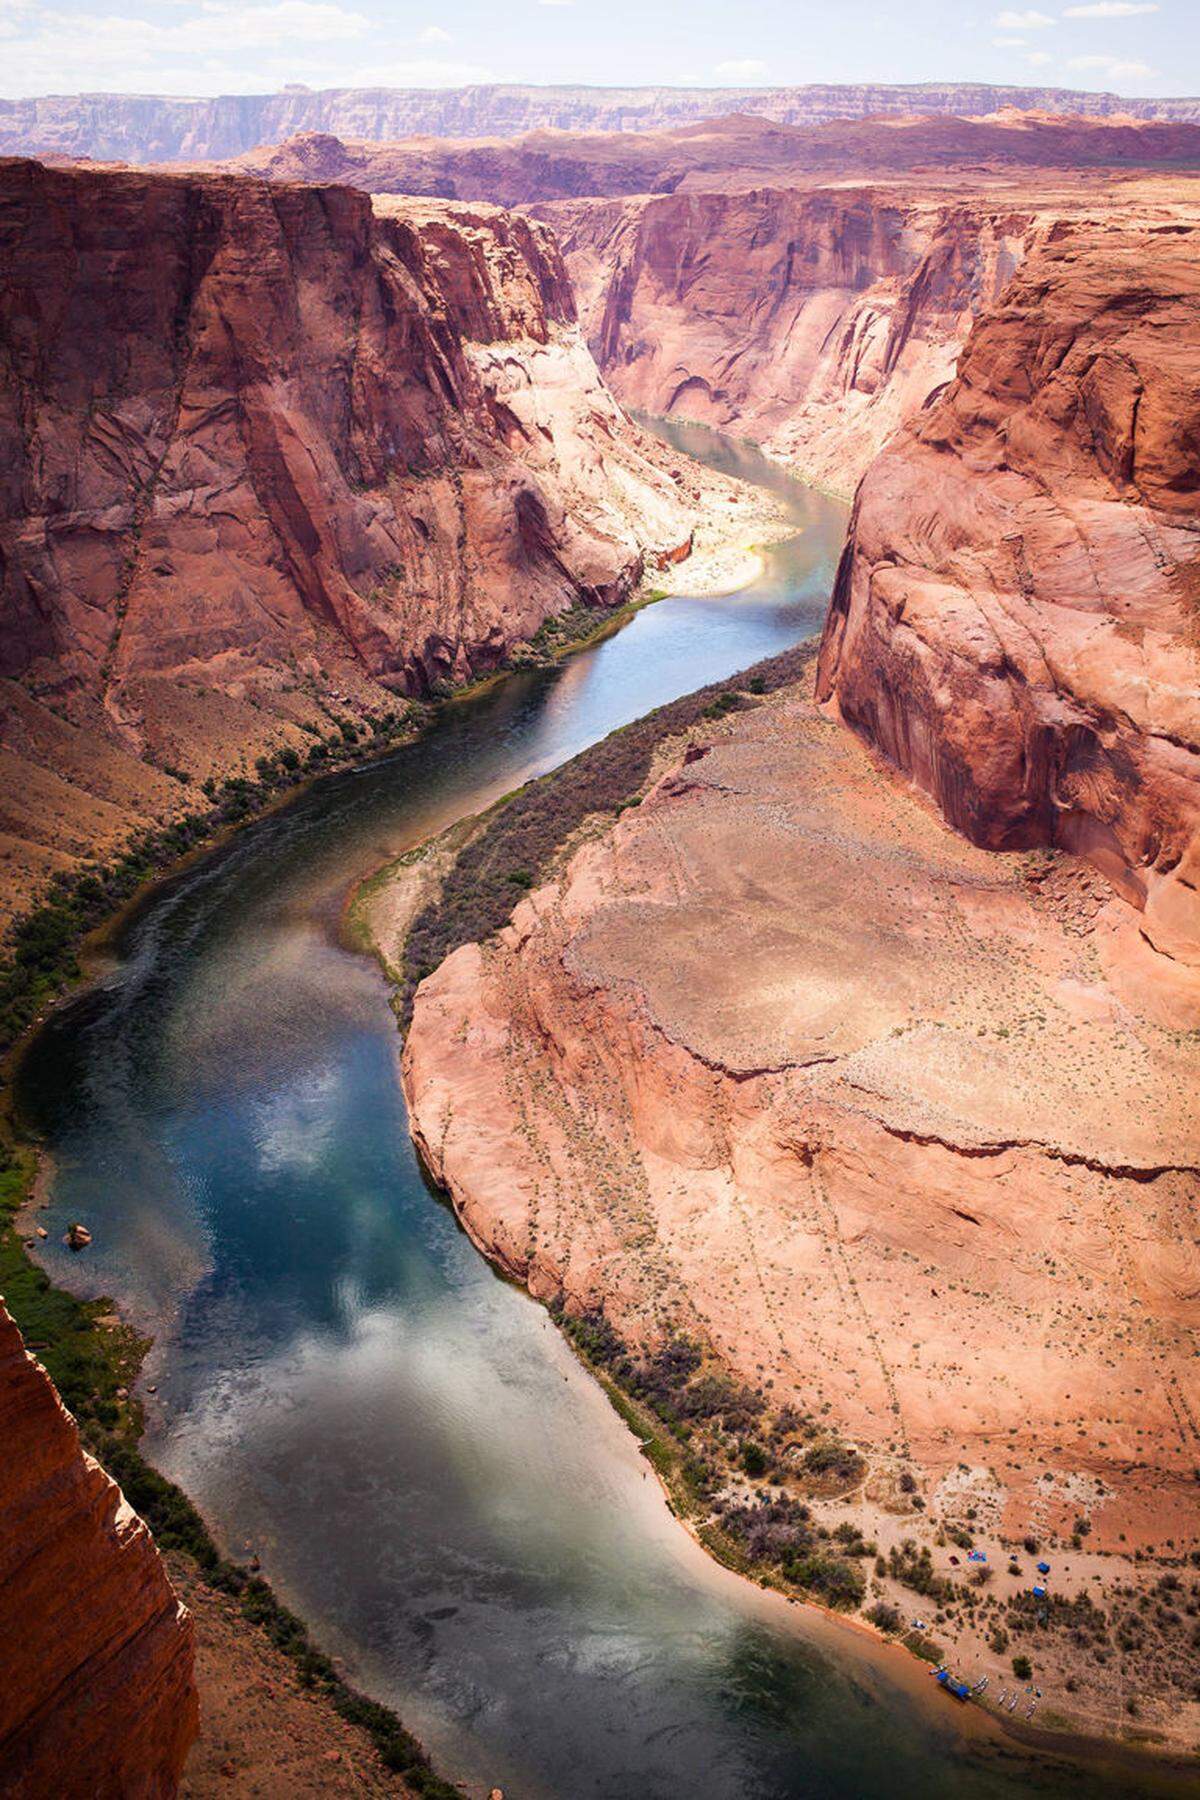 Auf einer Länge von 1.600 Kilometer fließt der Colorado River durch mehrere Canyons,  sieben US-Bundesstaaten und zwei mexikanischen. Doch der Fluss und seine Strömungen sind tückisch, 2014 gab es allein in den ersten sieben Monaten 15 Todesfälle.